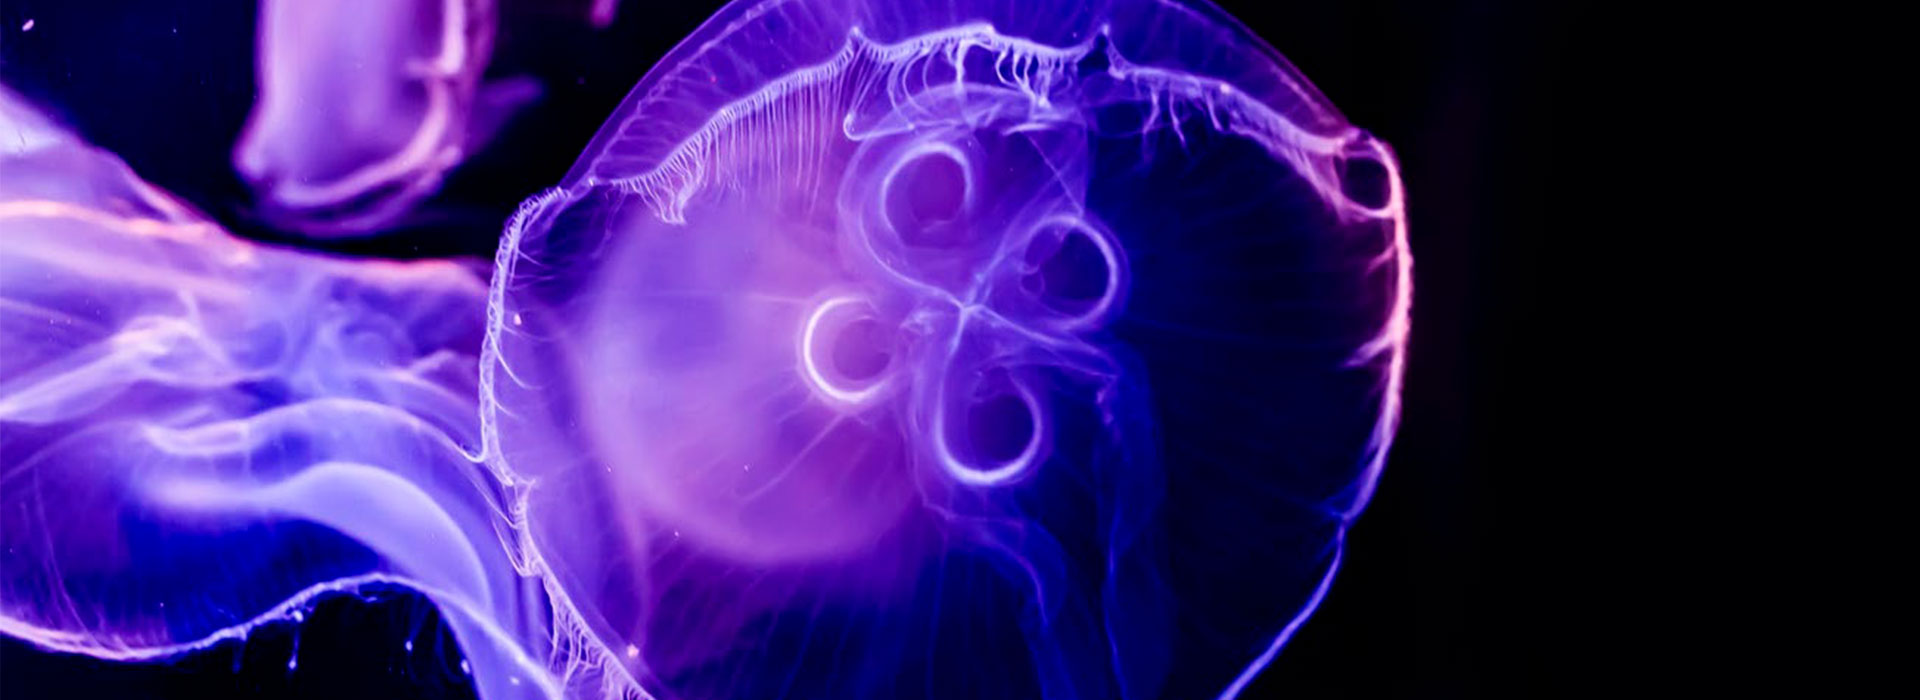 apparecchiature elettroniche per l'automazione industriale - banner medusa